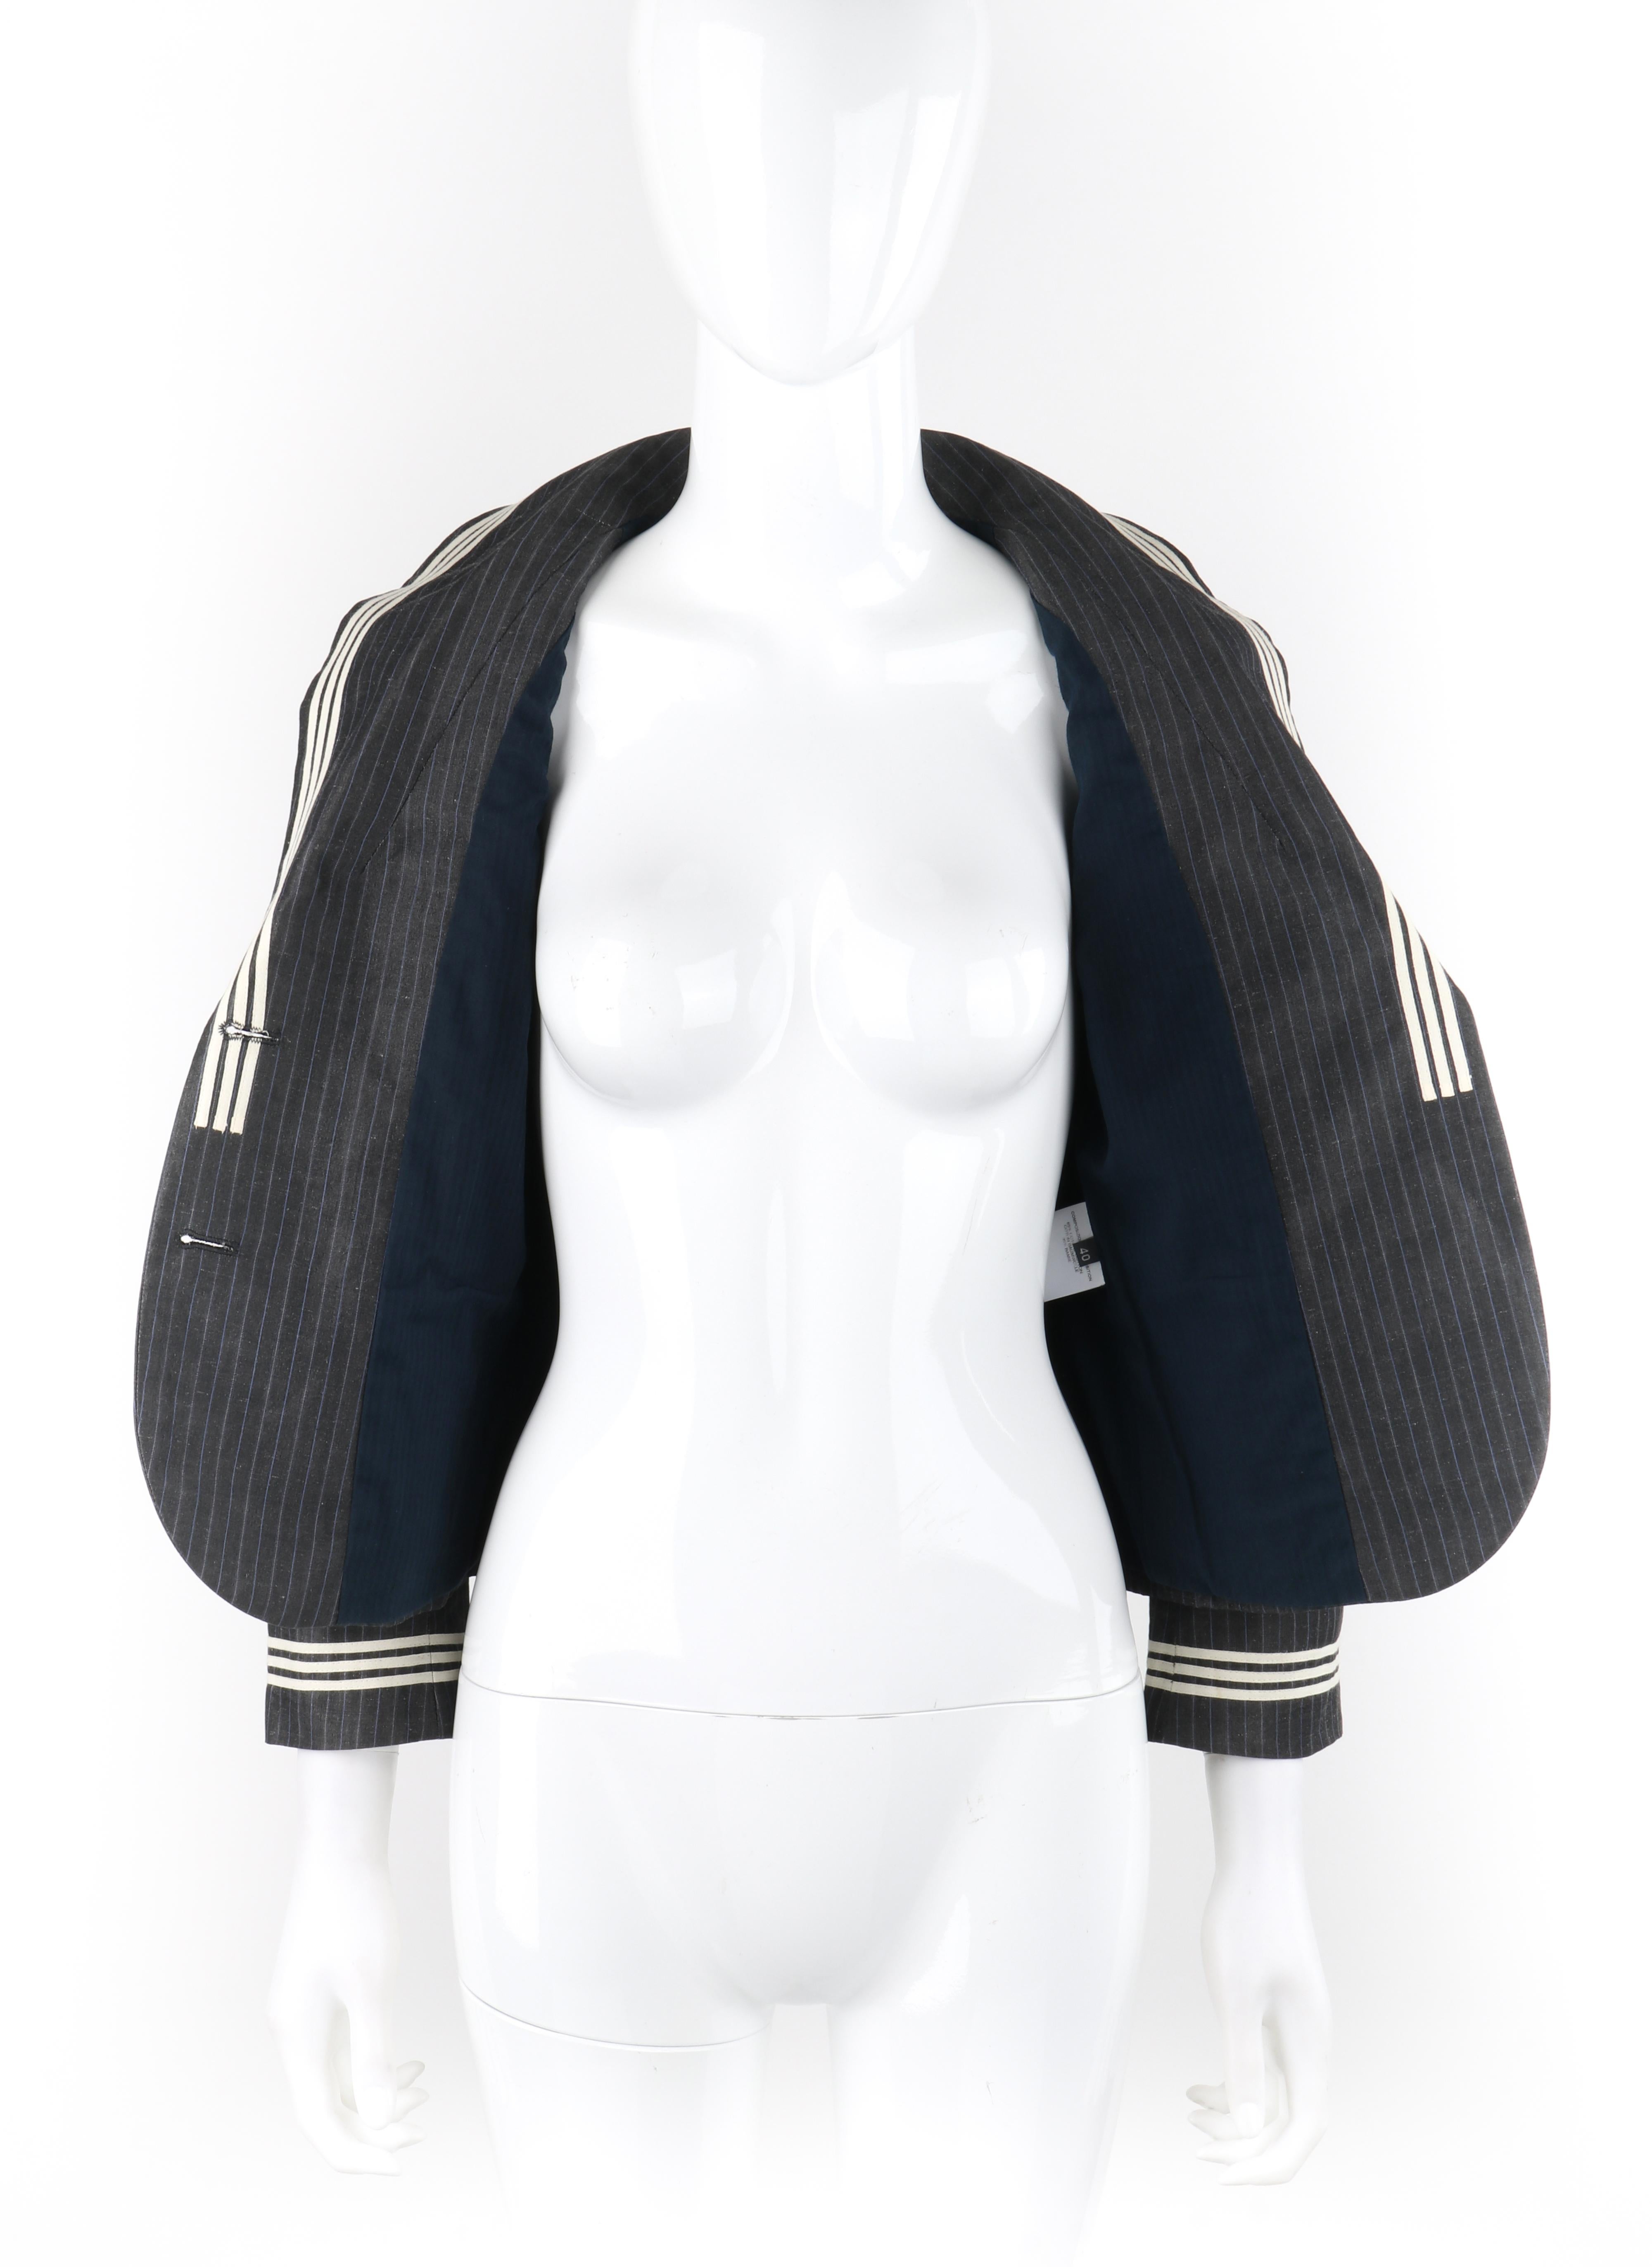 ALEXANDER McQUEEN S/S 2005 Grey Pinstripe Sailor Blazer Jacket Shawl Collar  For Sale 2